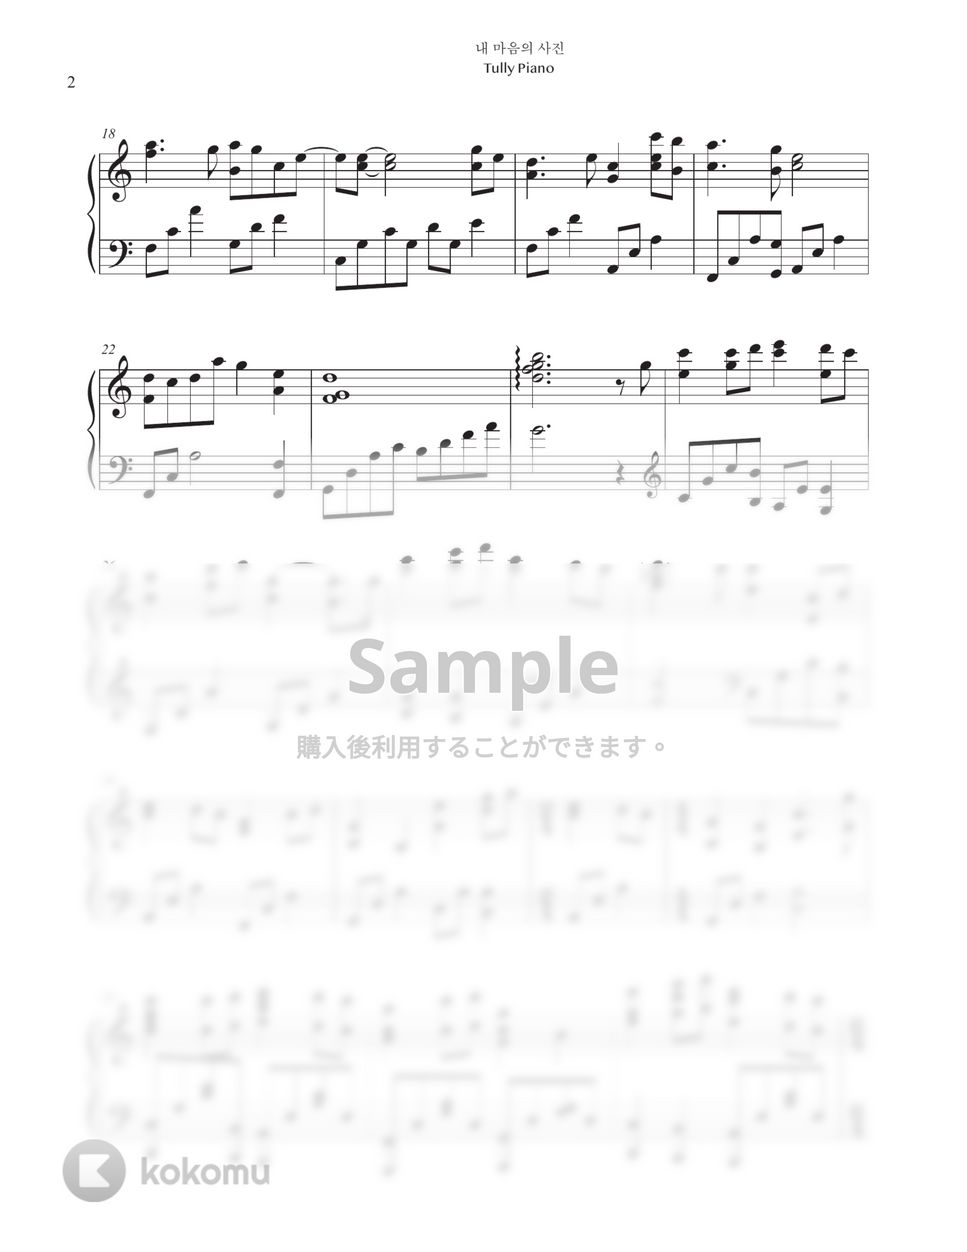 愛の不時着 OST - 心の写真 by Tully Piano